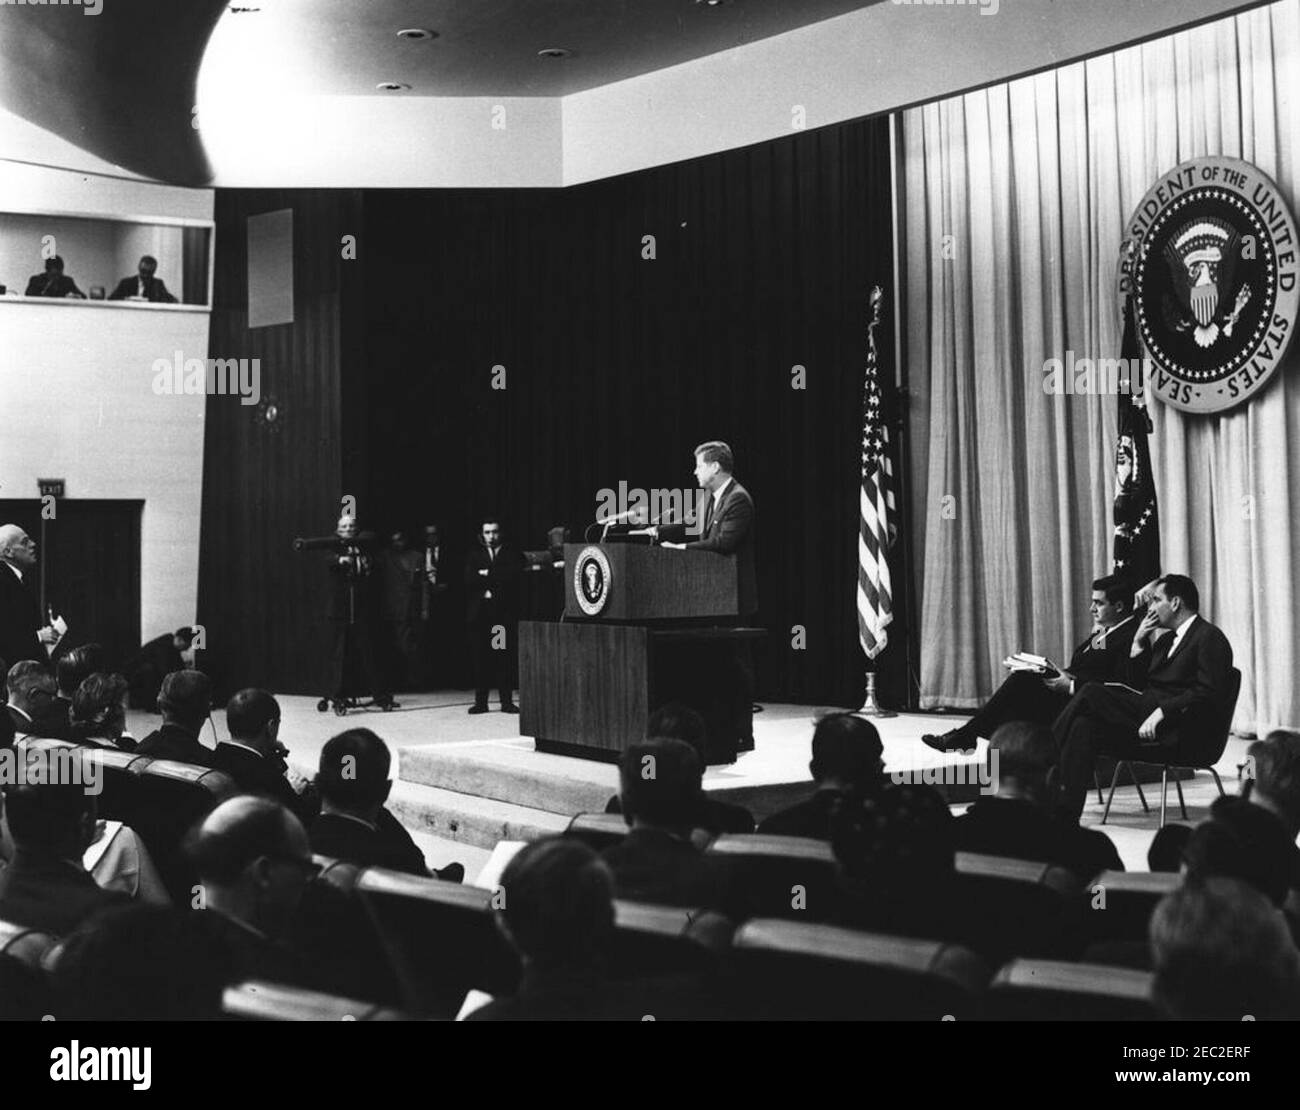 Conferenza stampa presso il Dipartimento di Auditorium di Stato, alle 18:00. Il presidente John F. Kennedy parla dal leggio durante una conferenza stampa. Il segretario alla stampa, Pierre Salinger, e il segretario aggiunto alla stampa, Malcolm Kilduff, siedono sul palco a destra. Auditorium del Dipartimento di Stato, Washington, D.C. Foto Stock